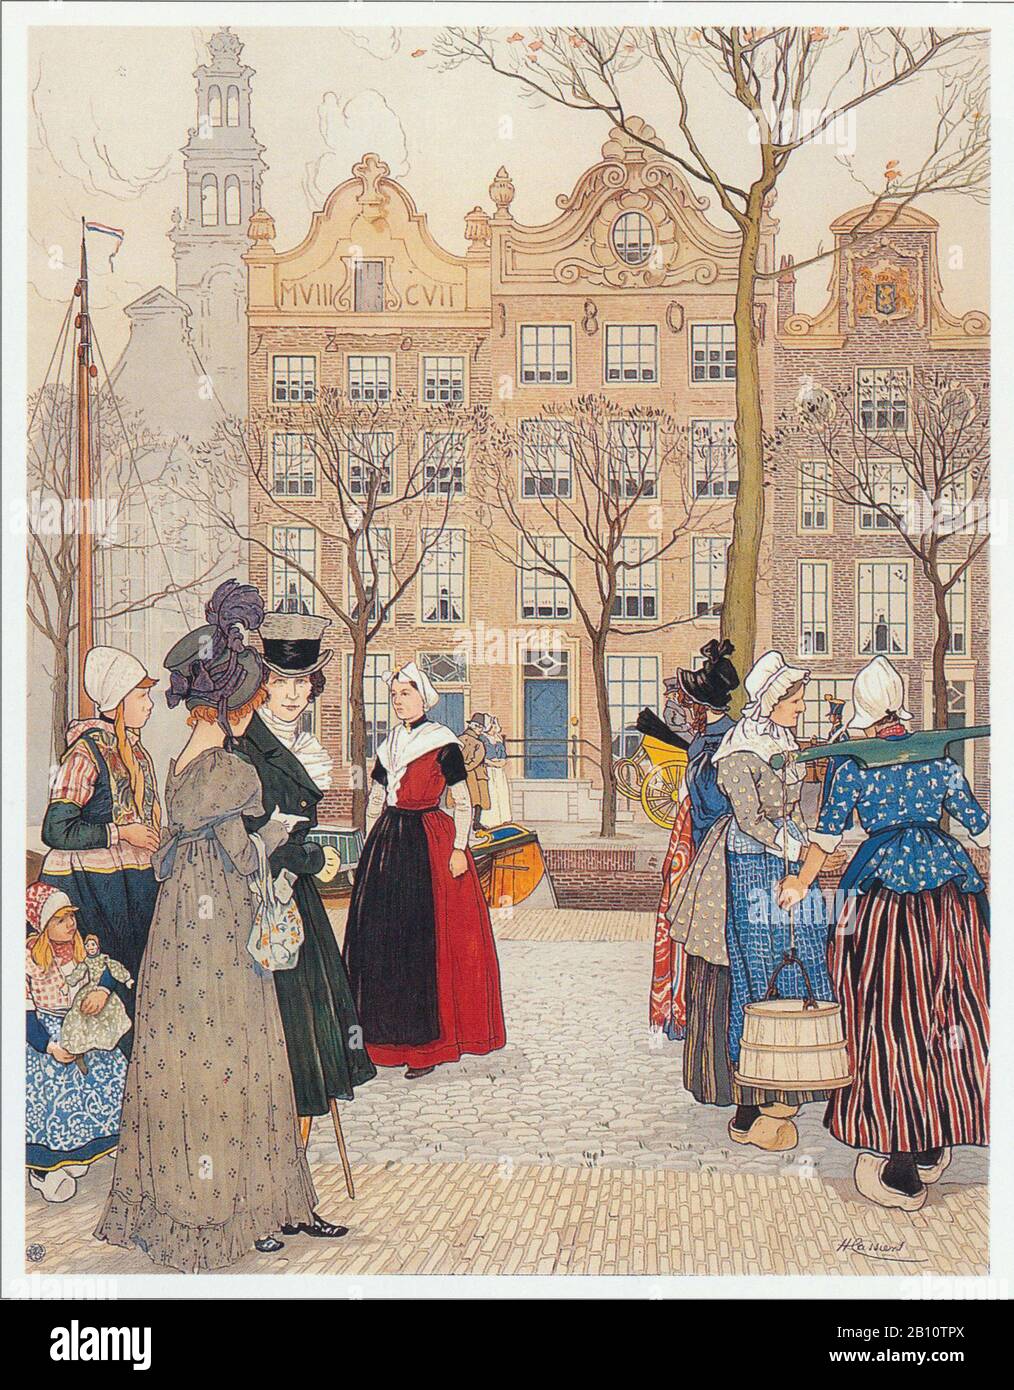 Amsterdam jordaan - Illustrazione di Henri Cassiers (1858 - 1944) Foto Stock